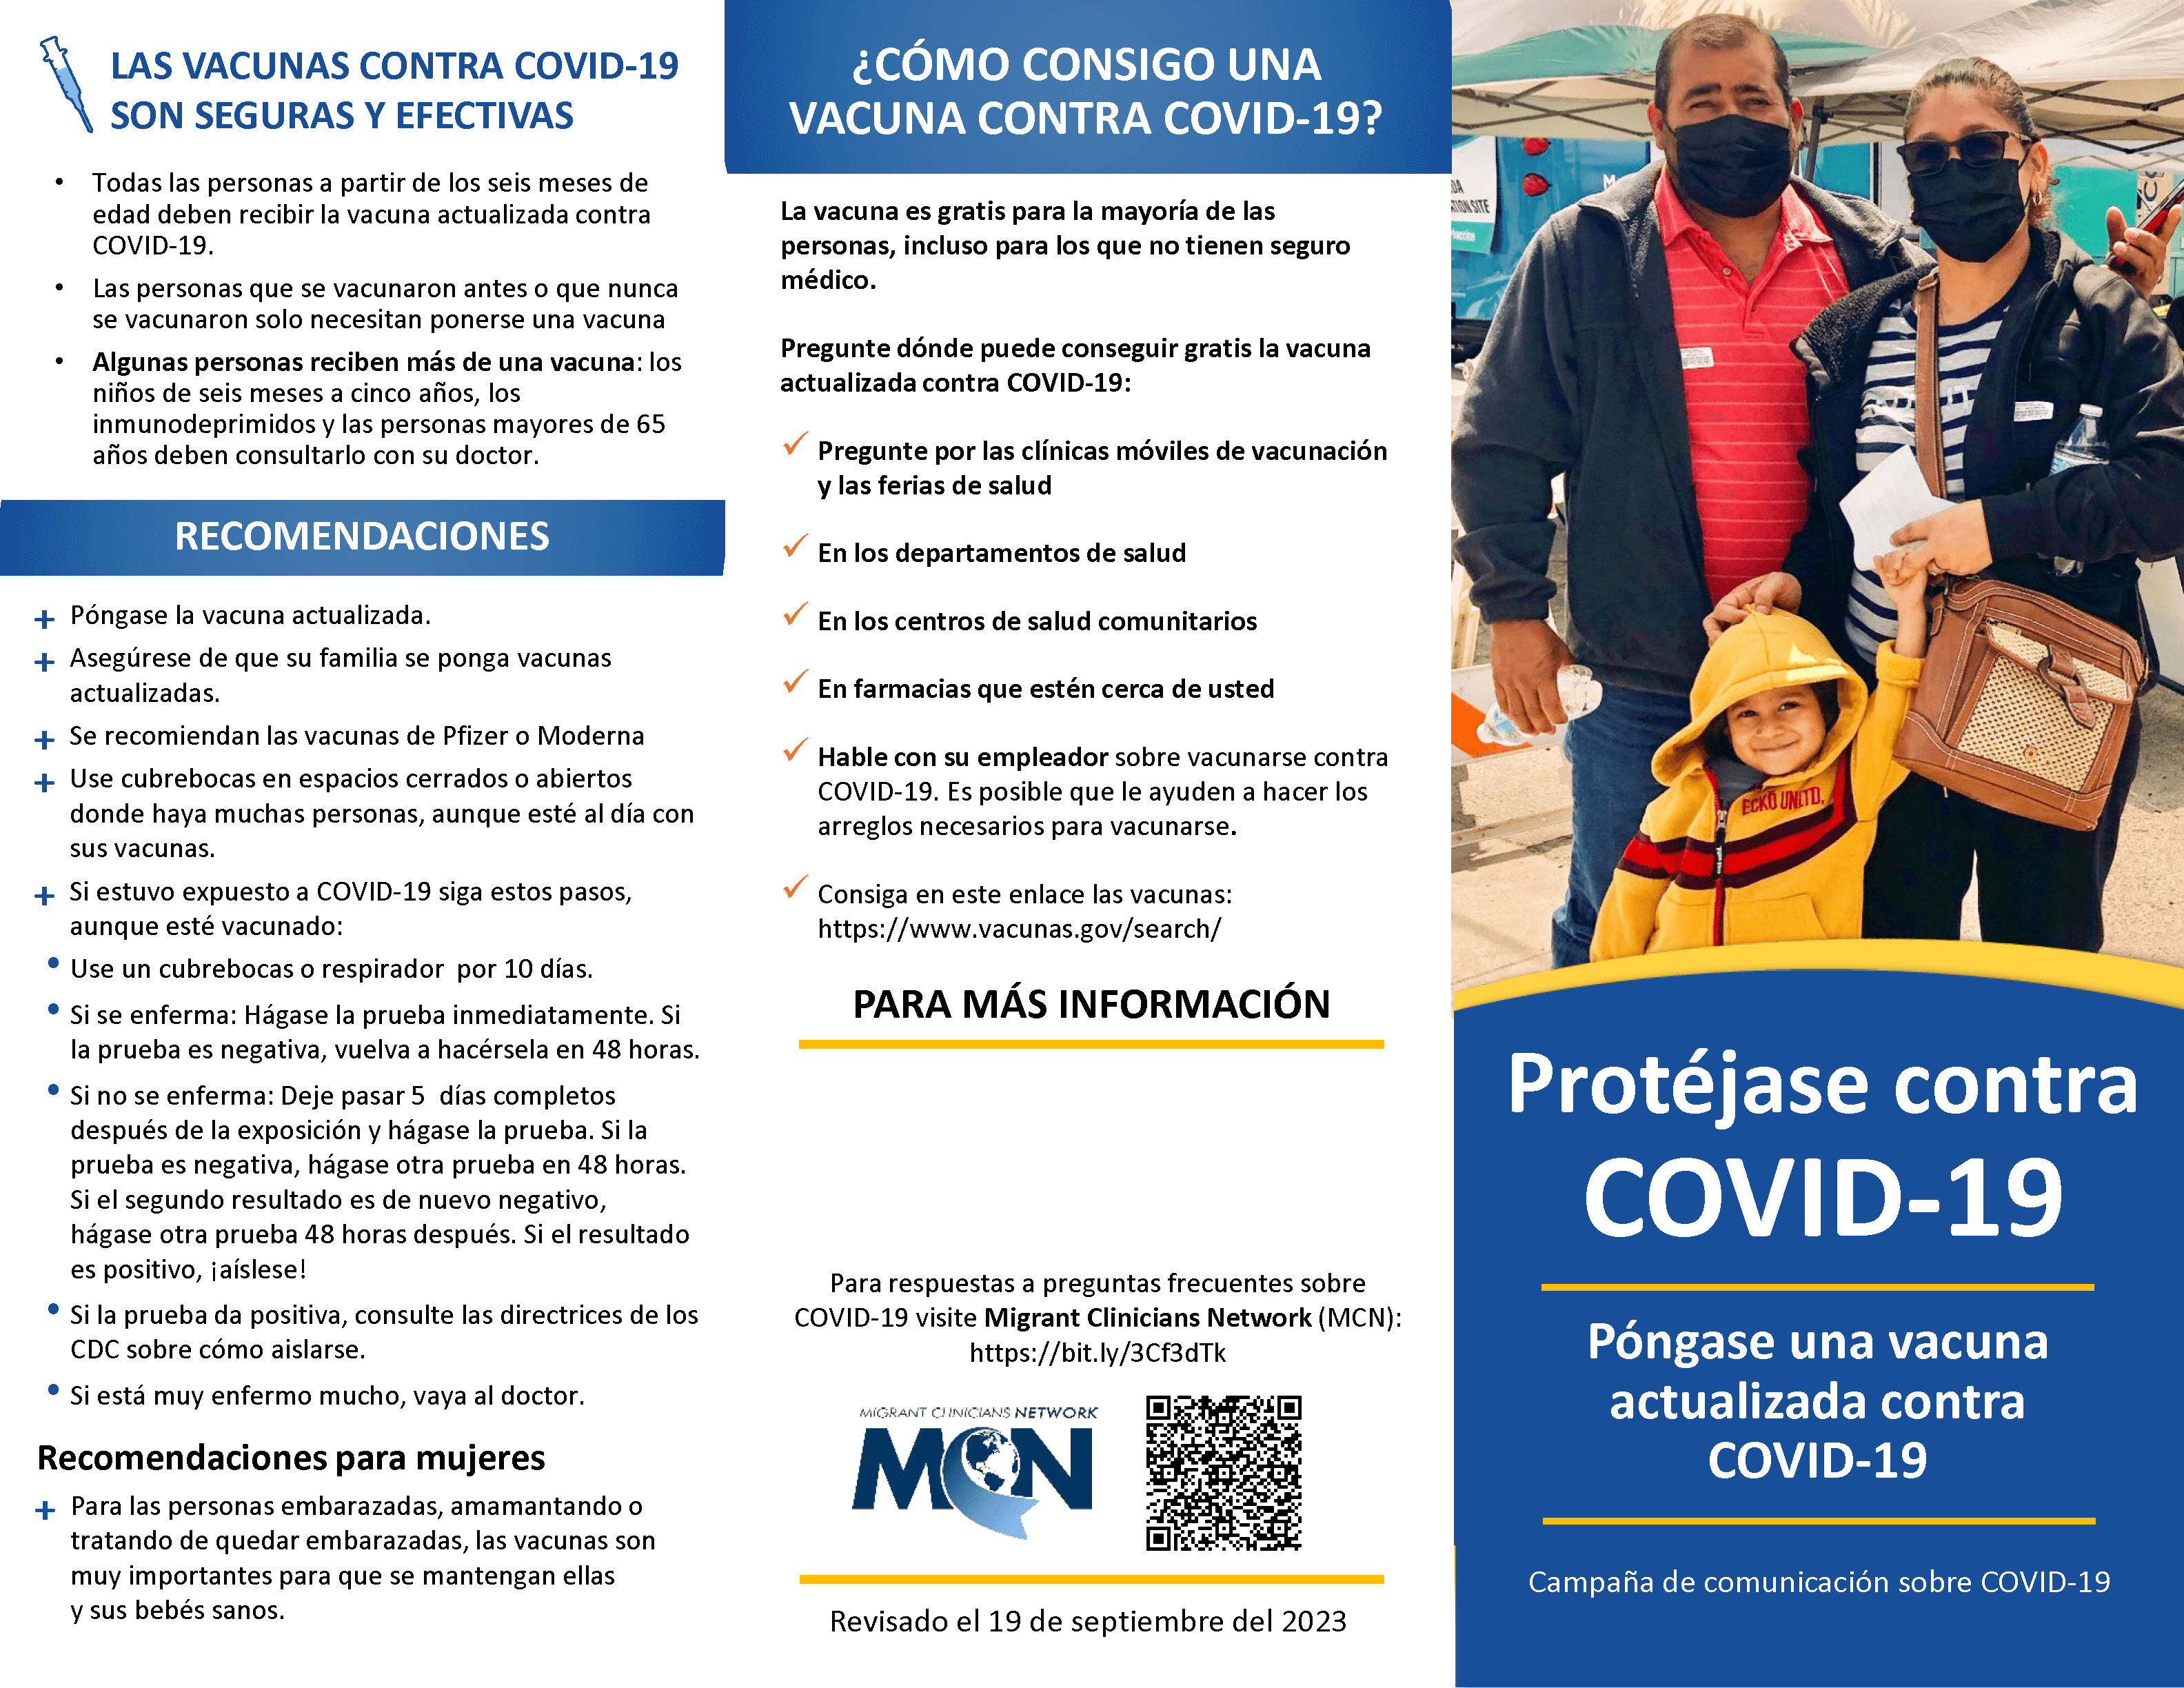 Protejase Contra COVID-19 - folleto formato